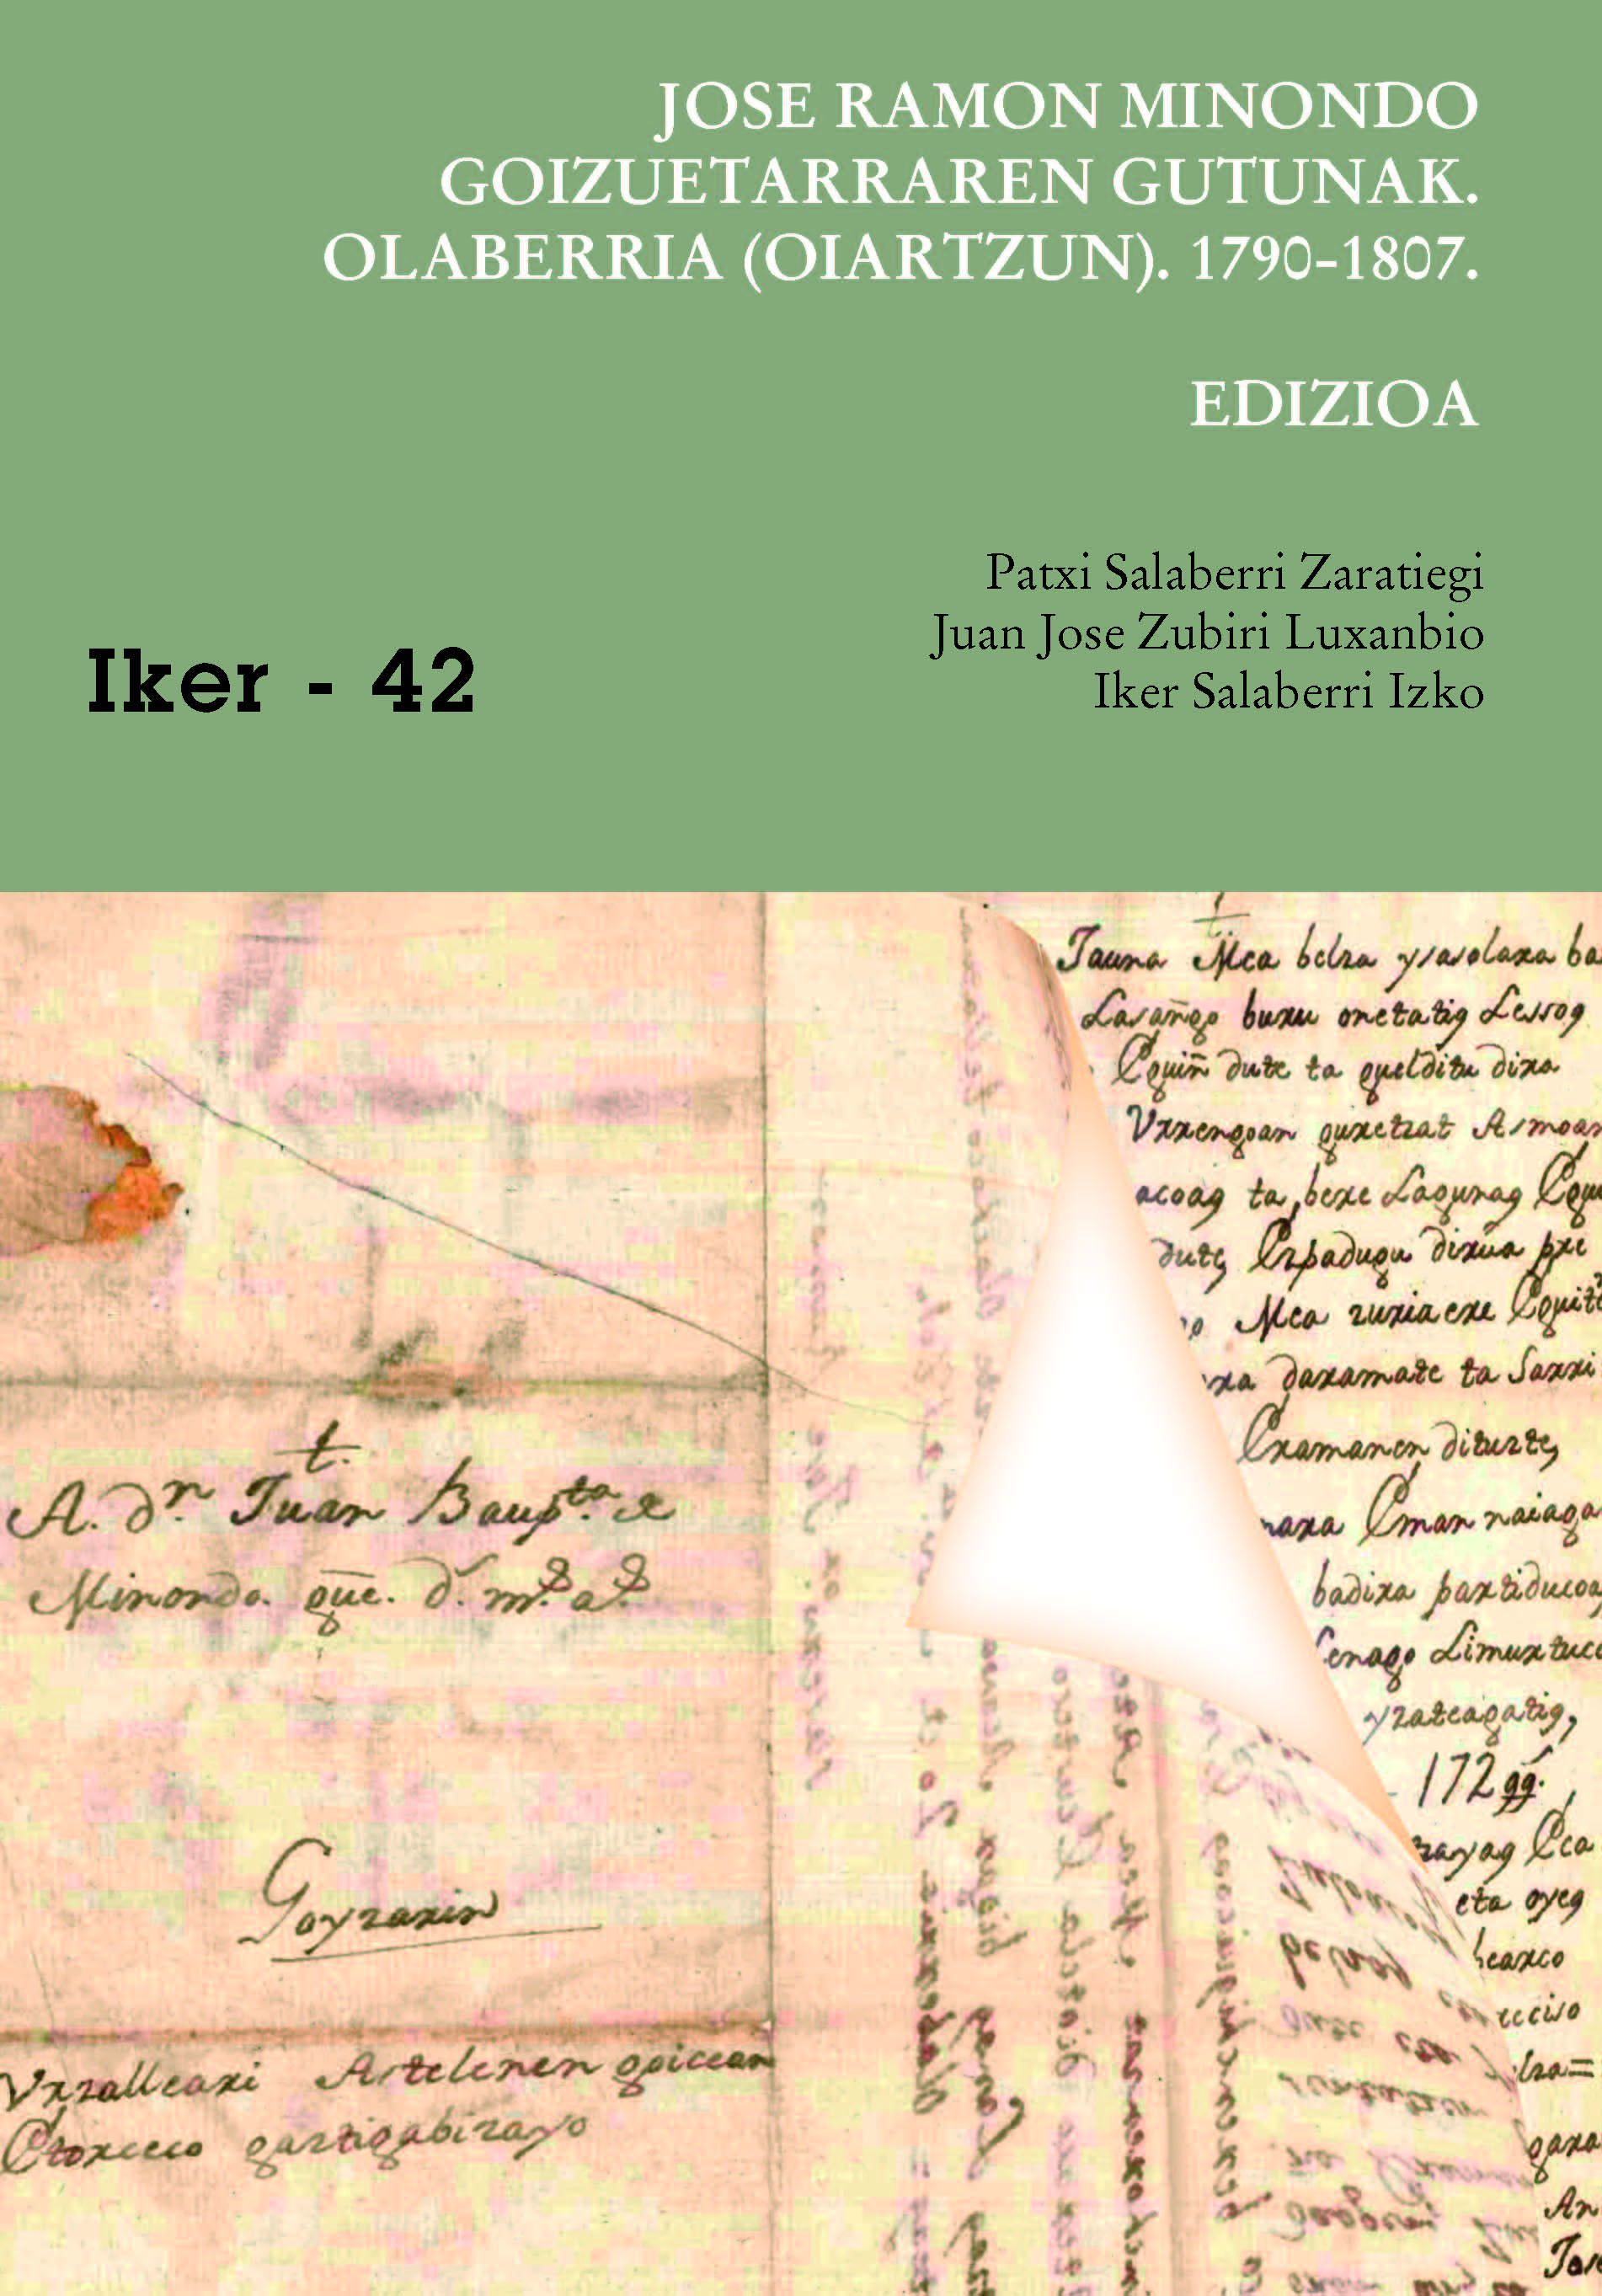 Jose Ramon Minondo goizuetarraren gutunak: Olaberria (Oiartzun). 1790-1807. EDIZIOA eta HIZKUNTZA AZTERKETA